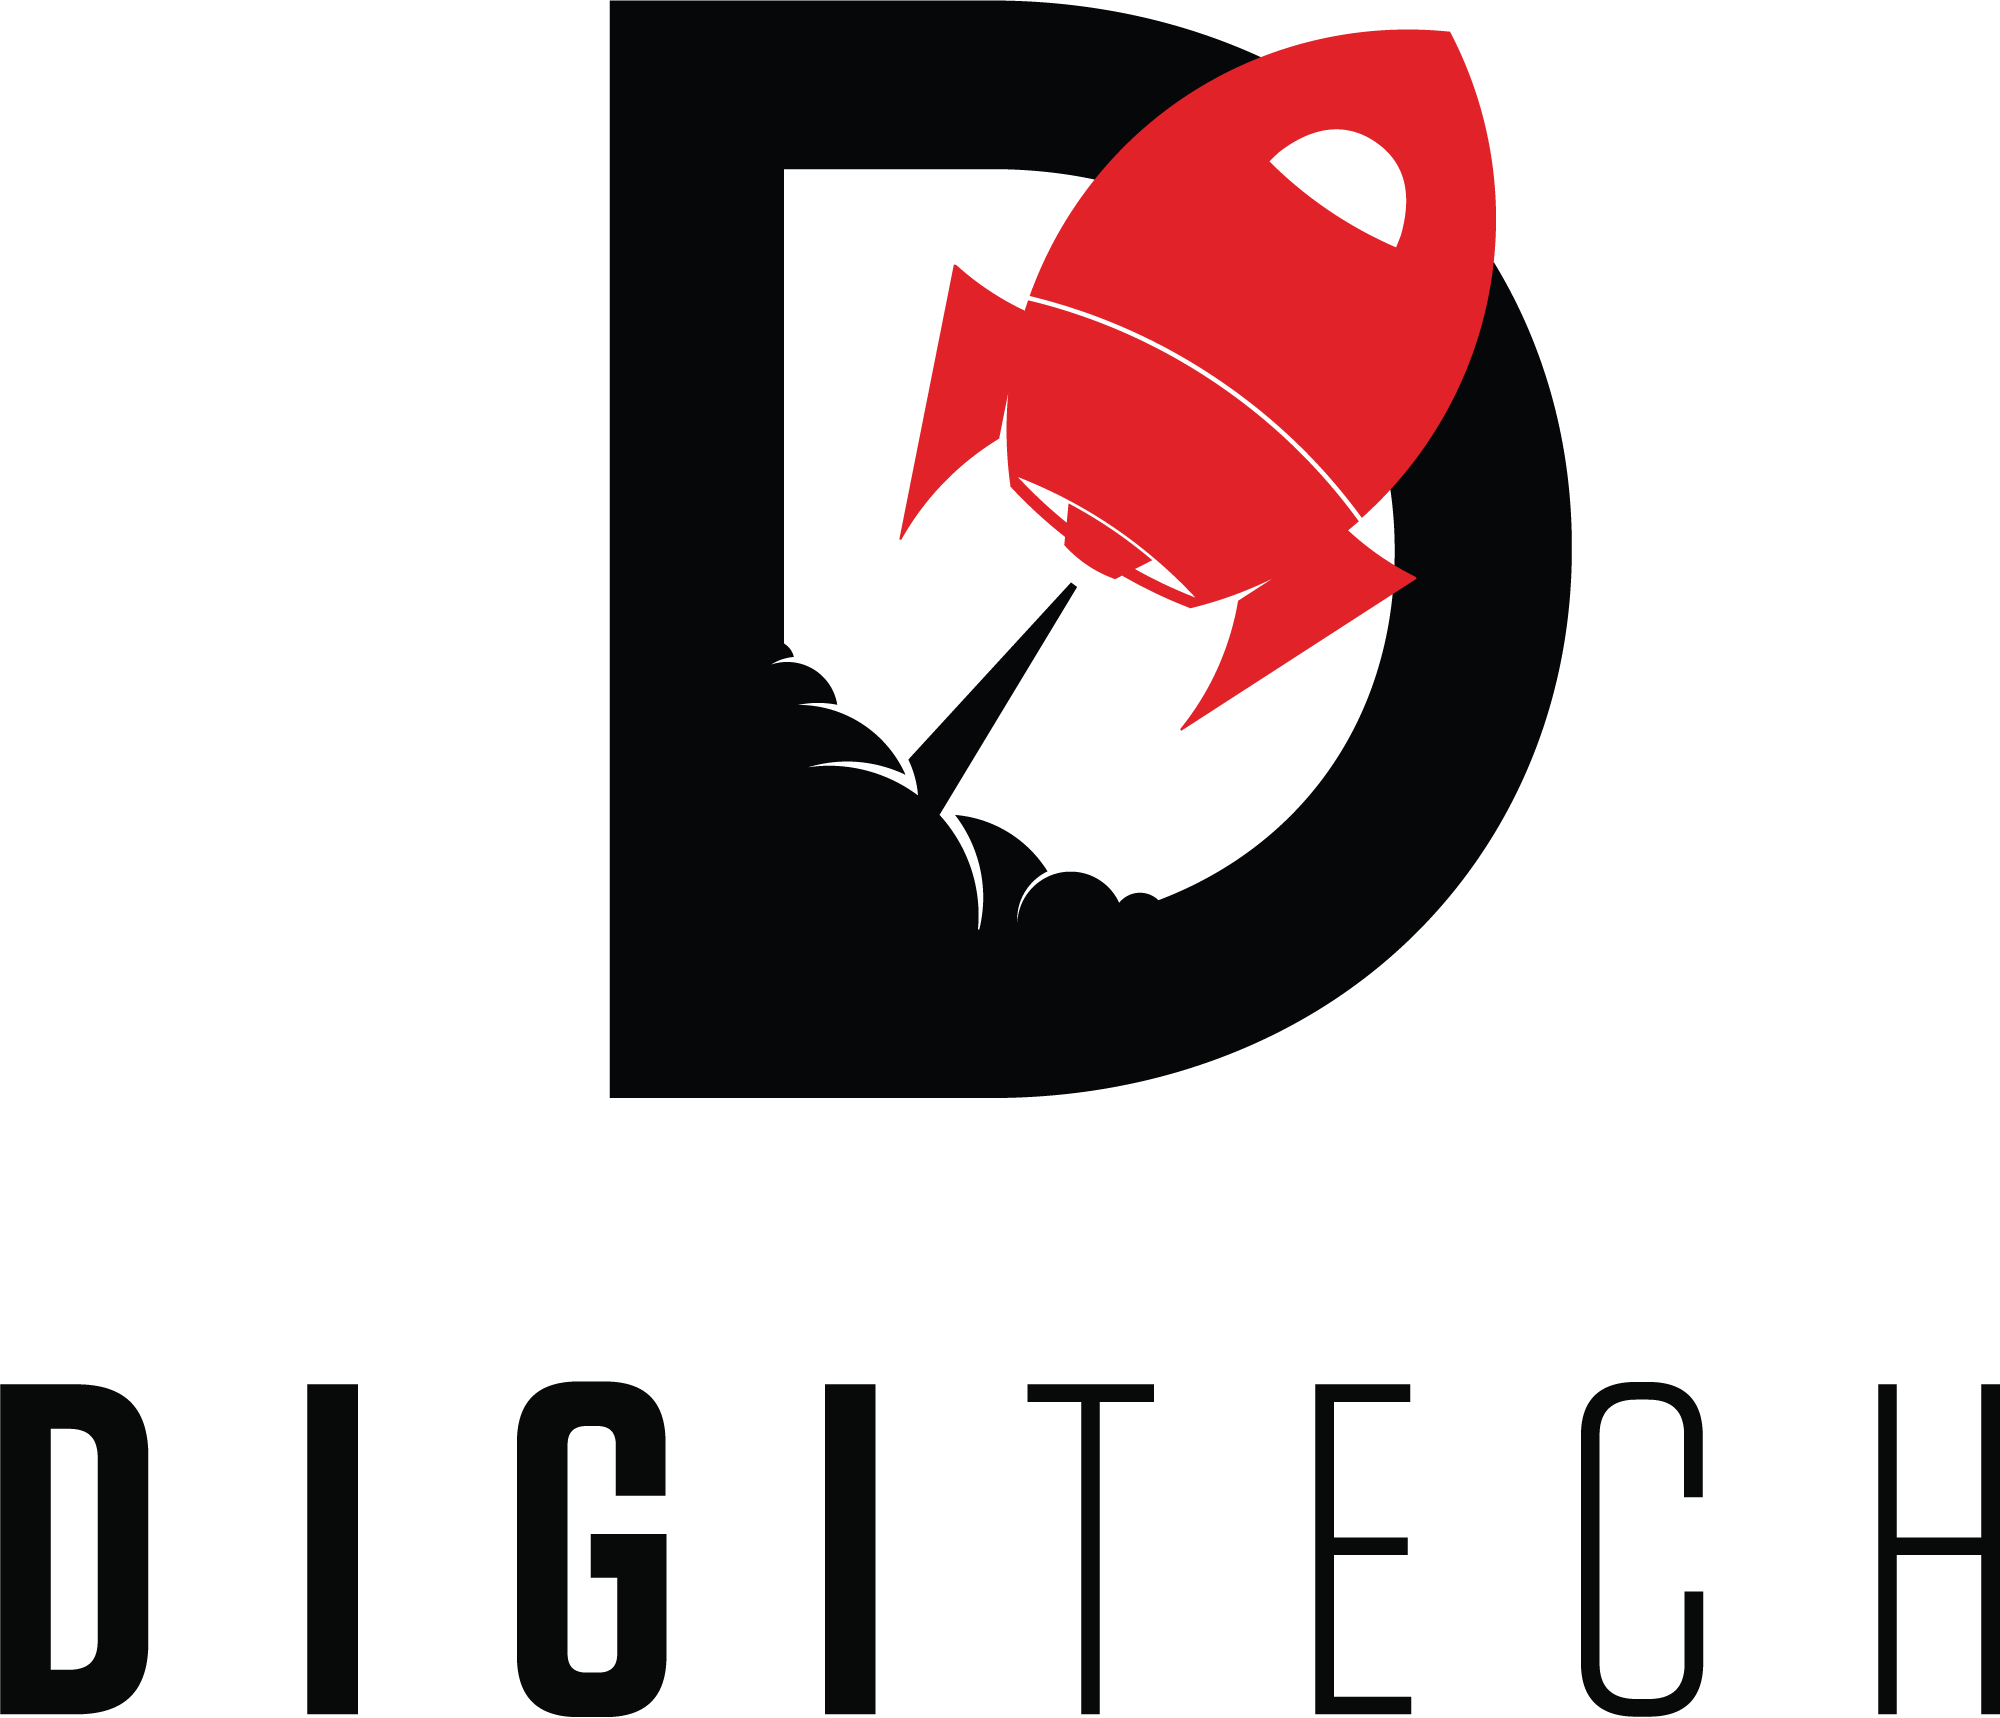 Digitech Inc